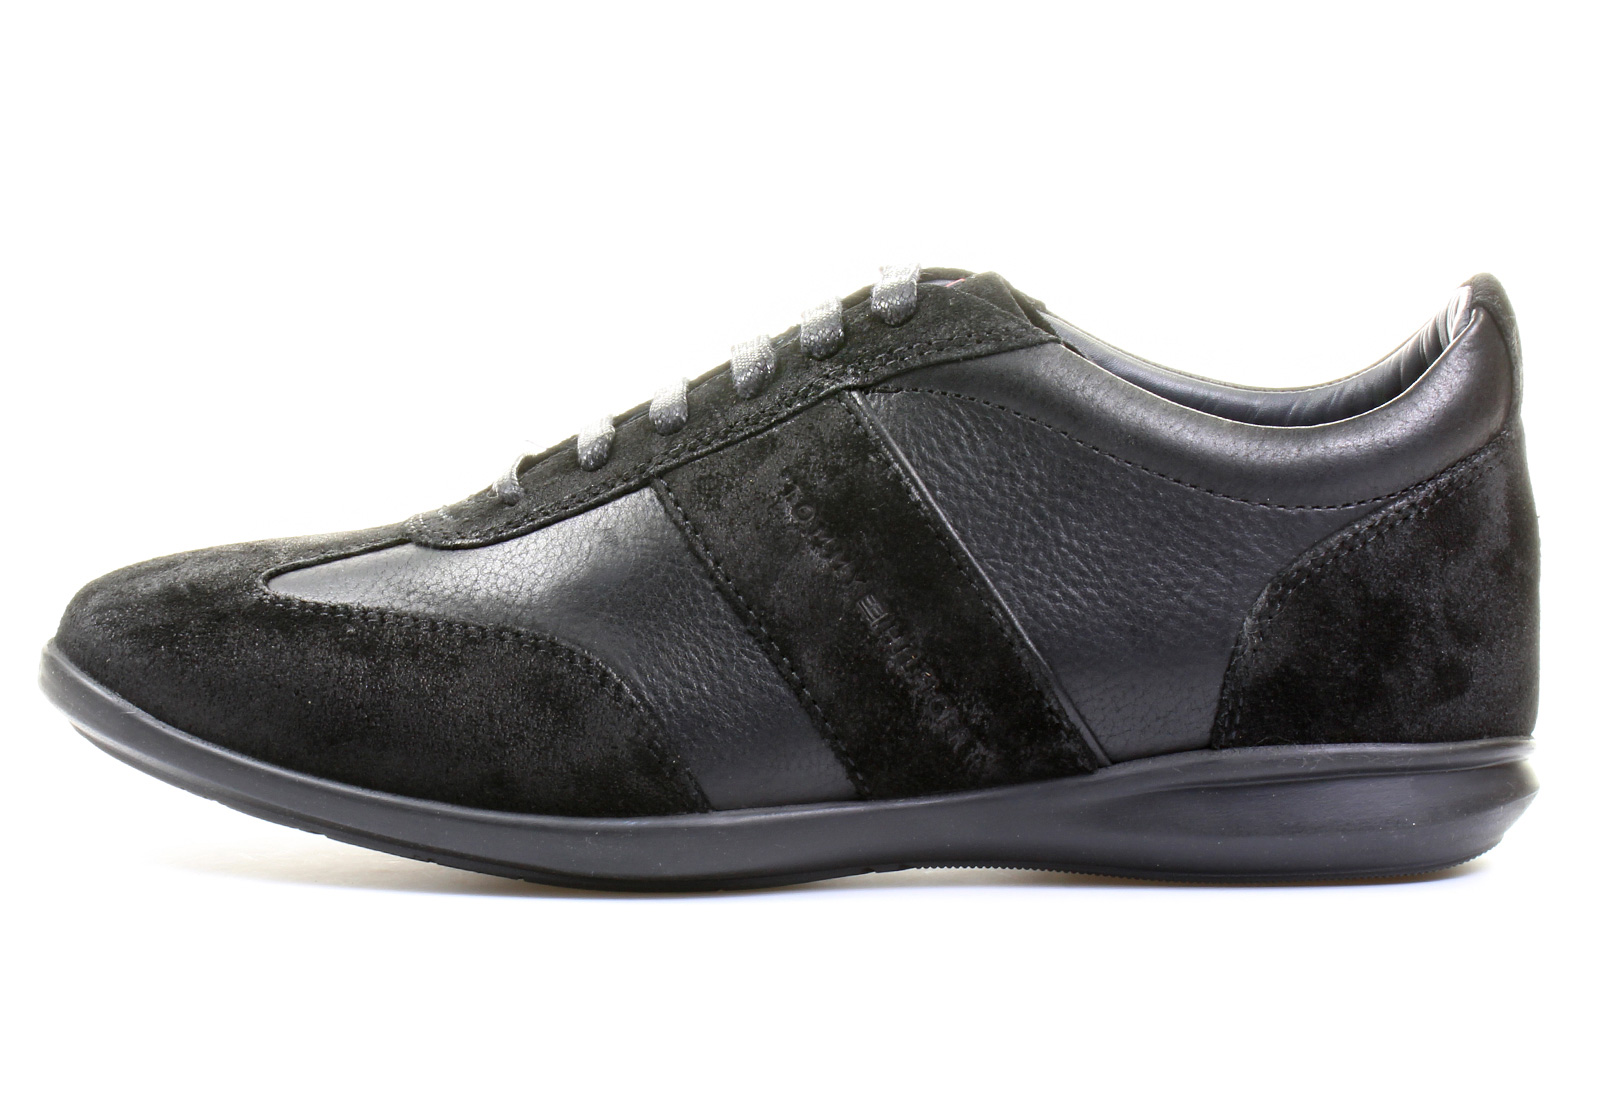 Tommy Hilfiger Shoes - Oliver 9A - 13F-6194-990 - Online shop for ...